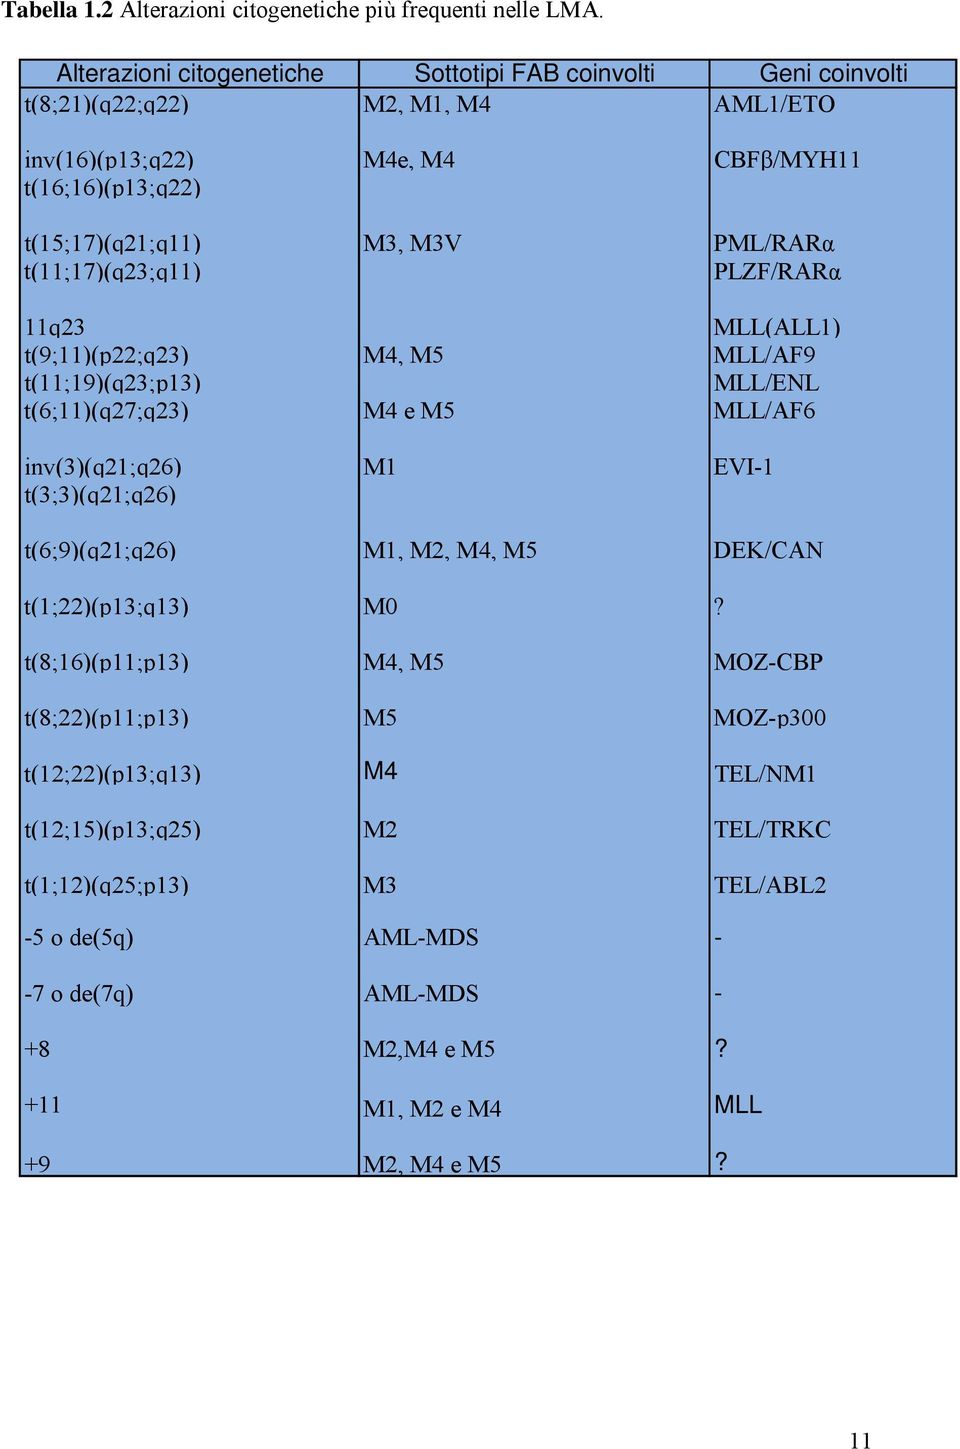 PML/RARα t(11;17)(q23;q11) PLZF/RARα 11q23 MLL(ALL1) t(9;11)(p22;q23) M4, M5 MLL/AF9 t(11;19)(q23;p13) MLL/ENL t(6;11)(q27;q23) M4 e M5 MLL/AF6 inv(3)(q21;q26) M1 EVI-1